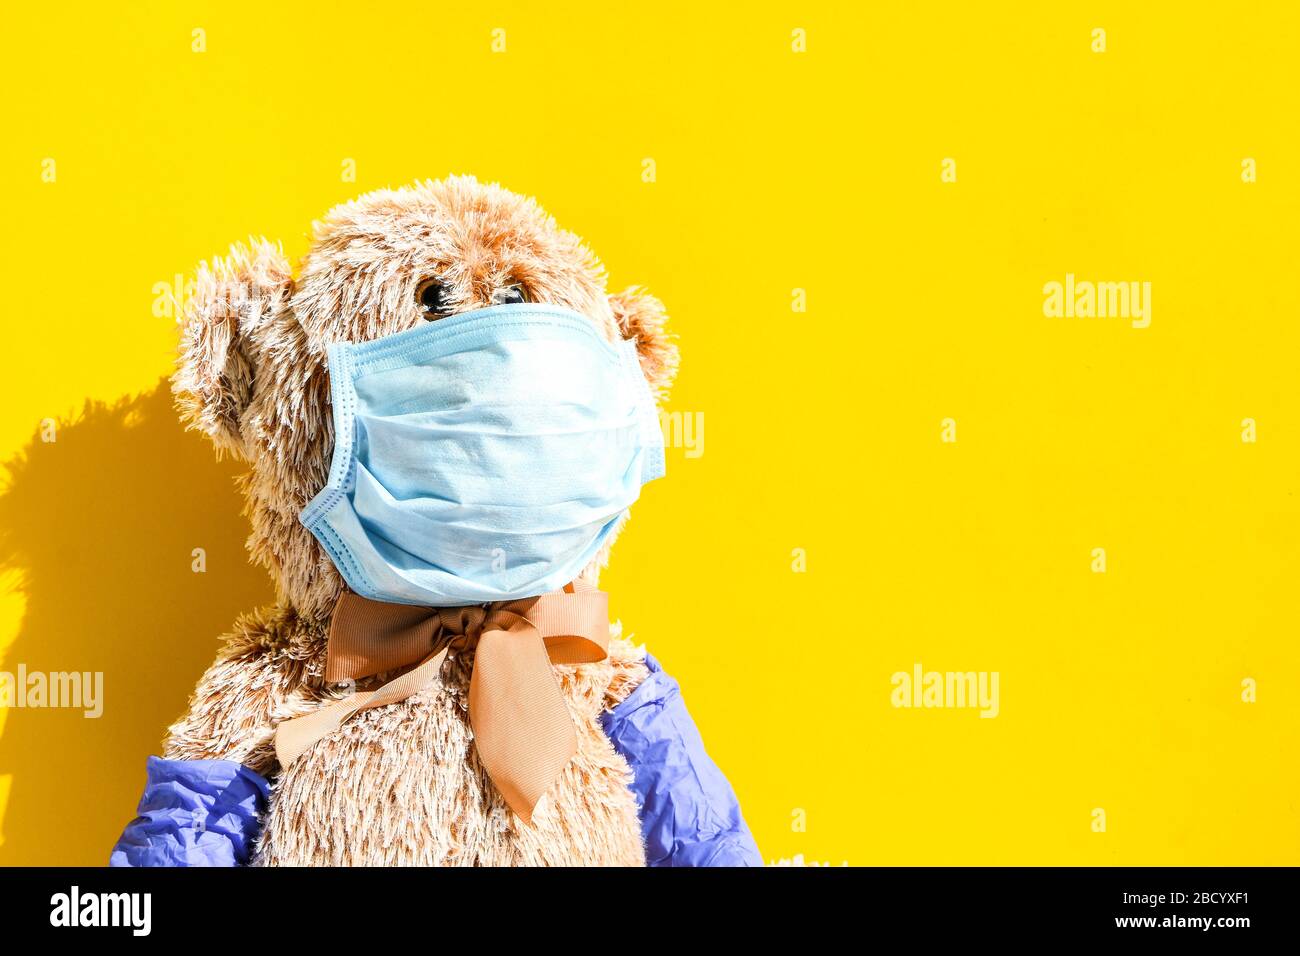 Coronavirus covid-19 et concept de protection contre la pollution. Poupée ours en peluche portant un masque et des gants de protection sur fond jaune, espace de copie Banque D'Images